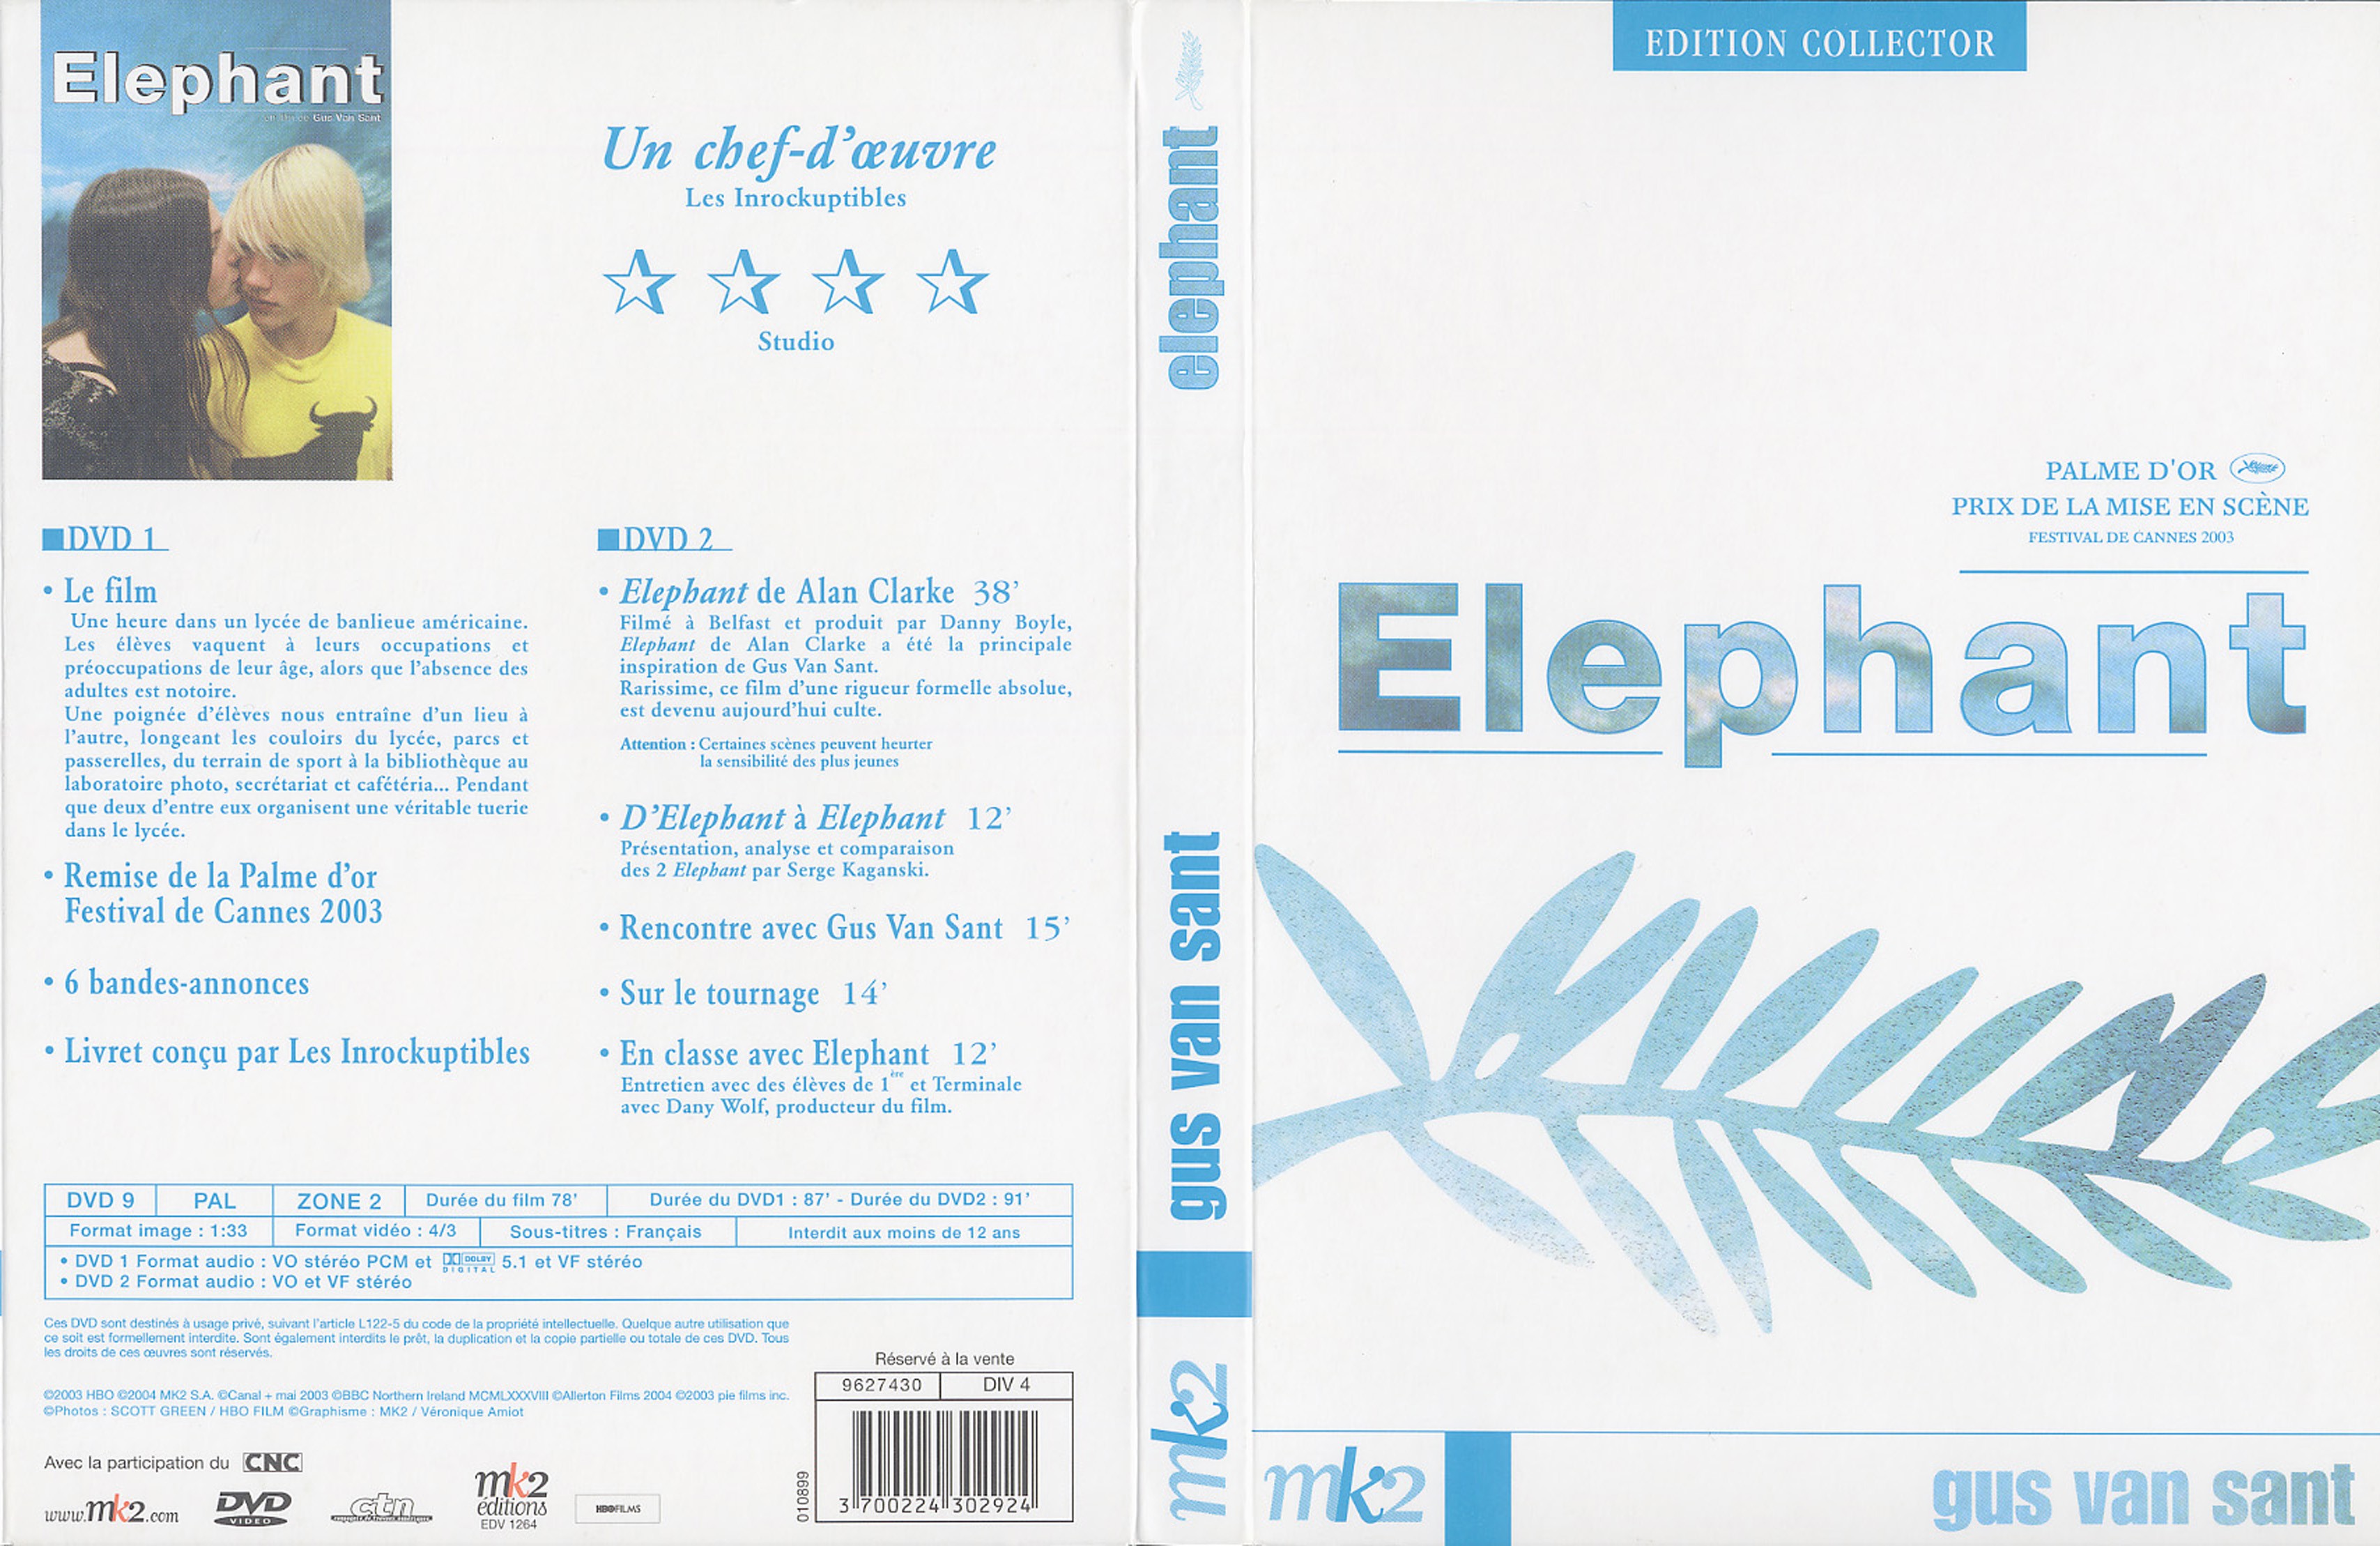 Jaquette DVD Elephant v2